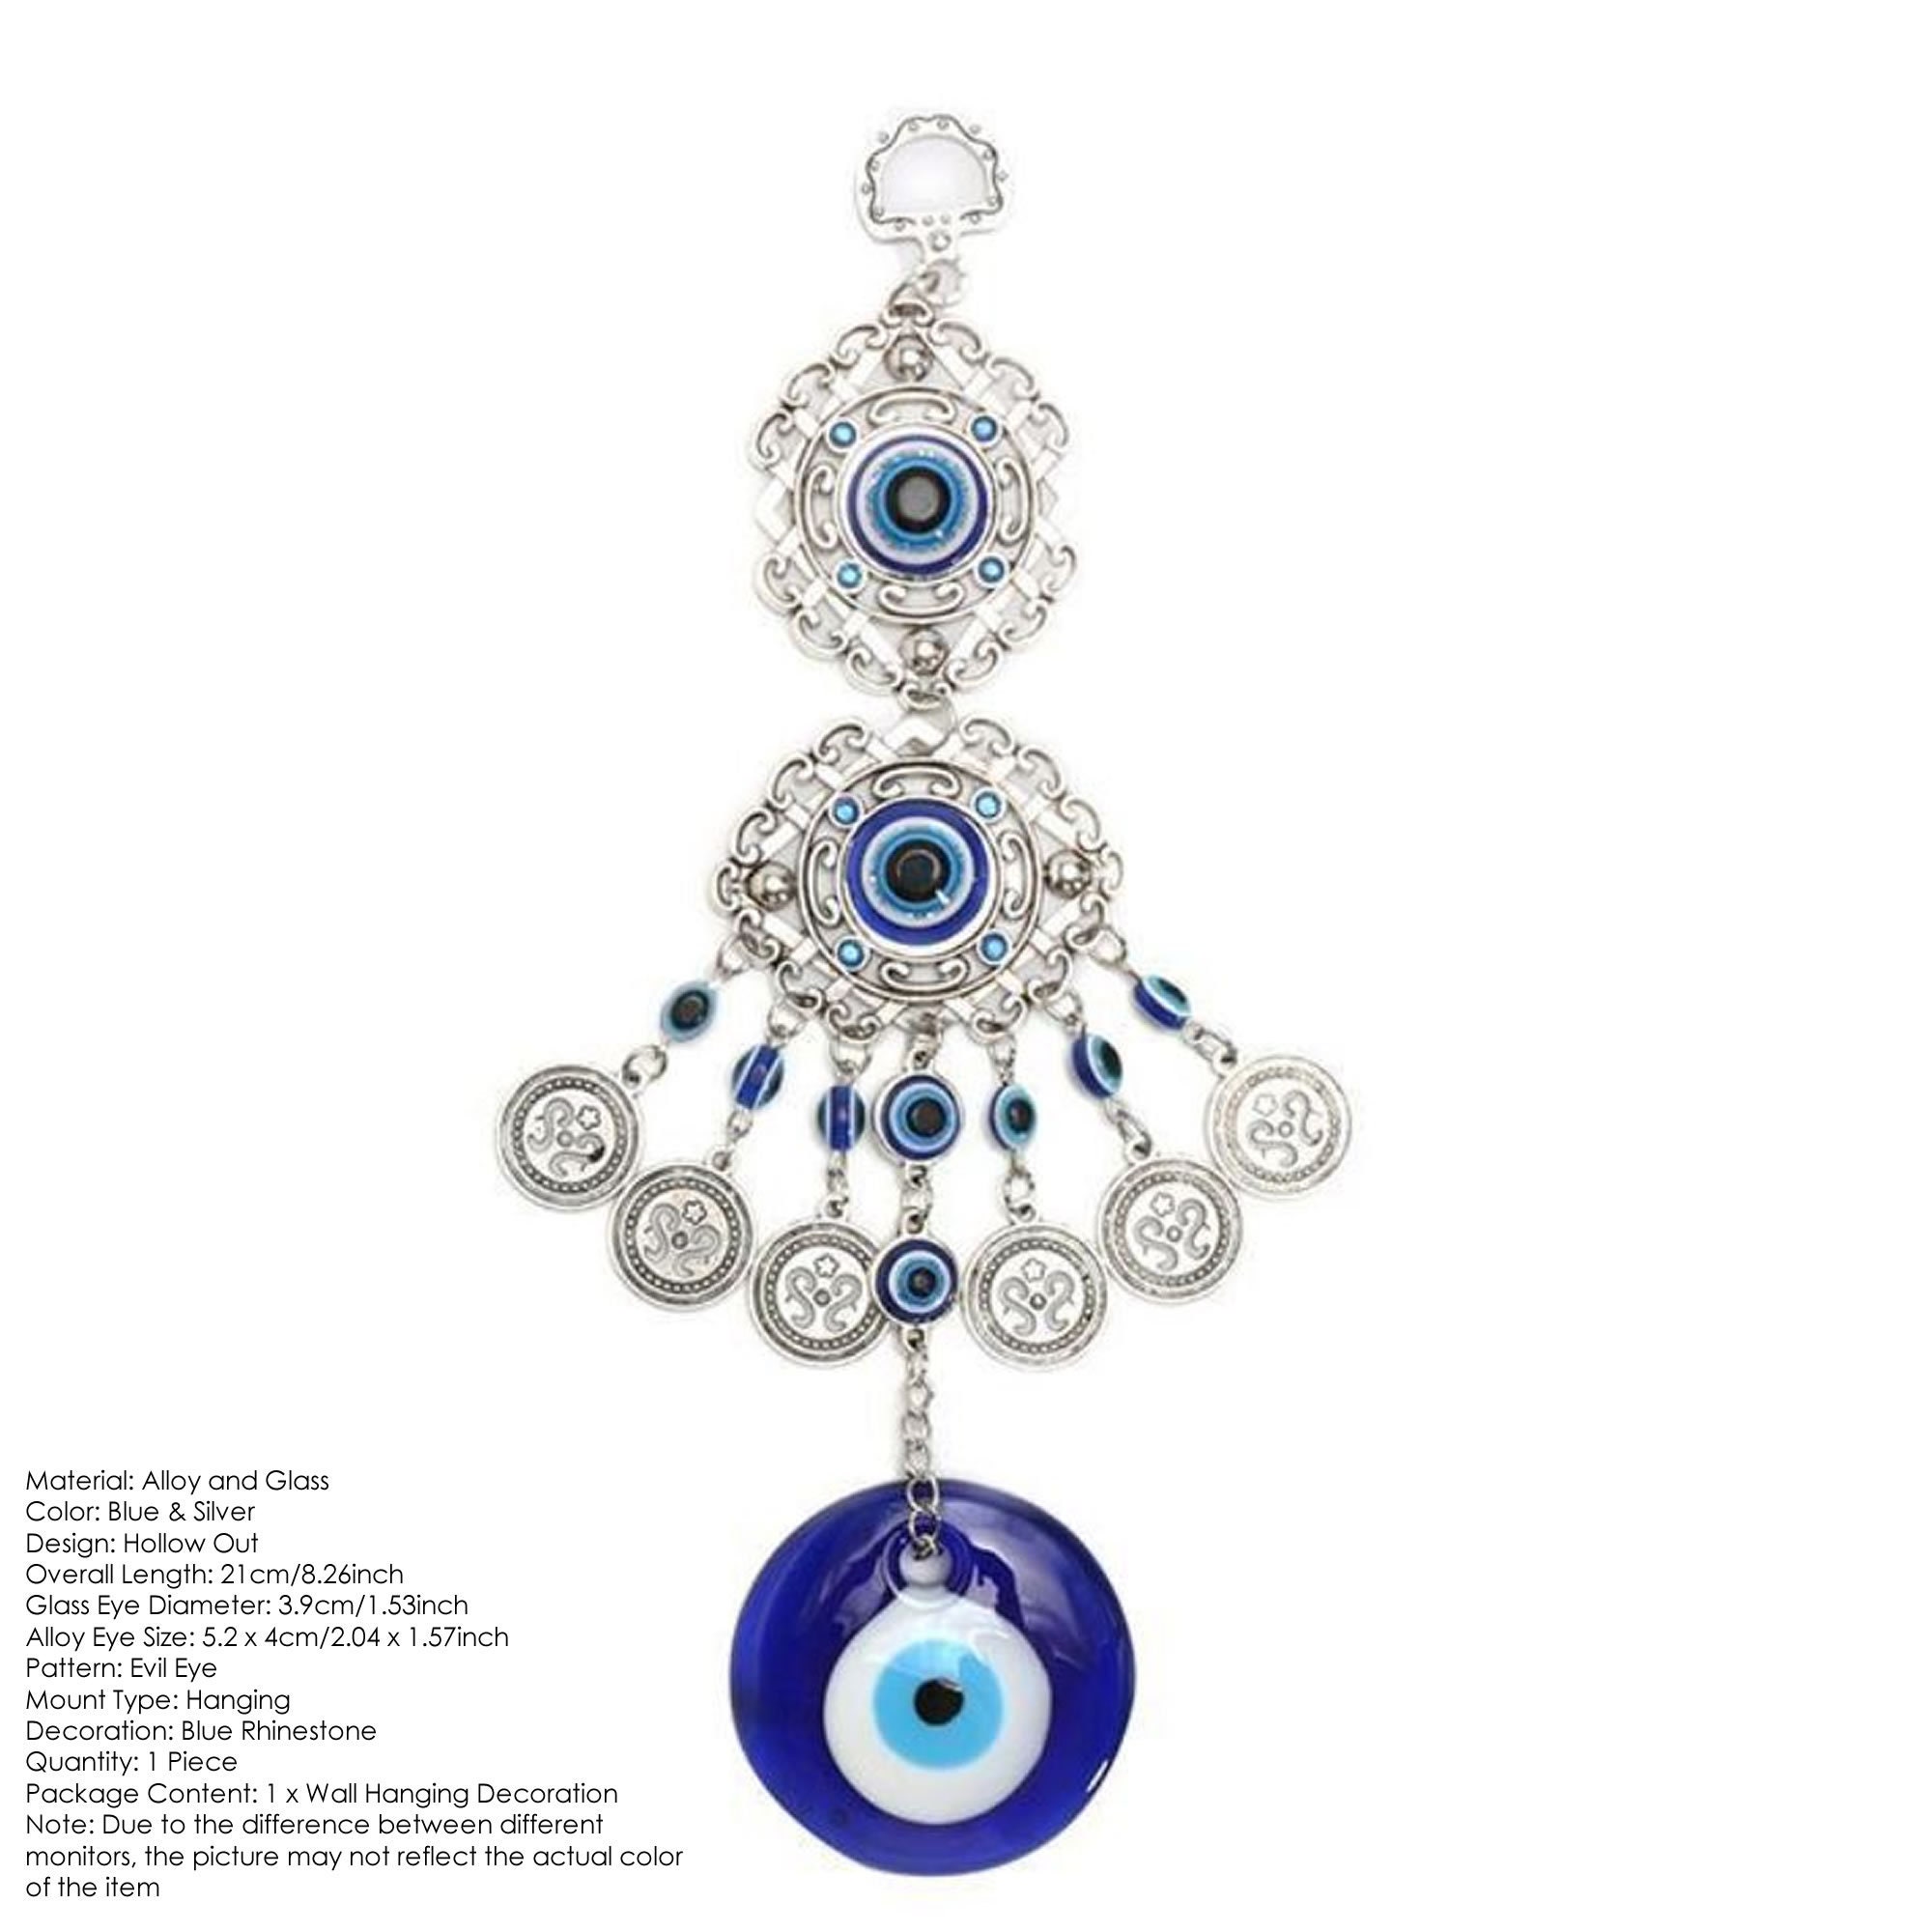 Oeil Bleu de Nazar - Amulettes - TERNATUR